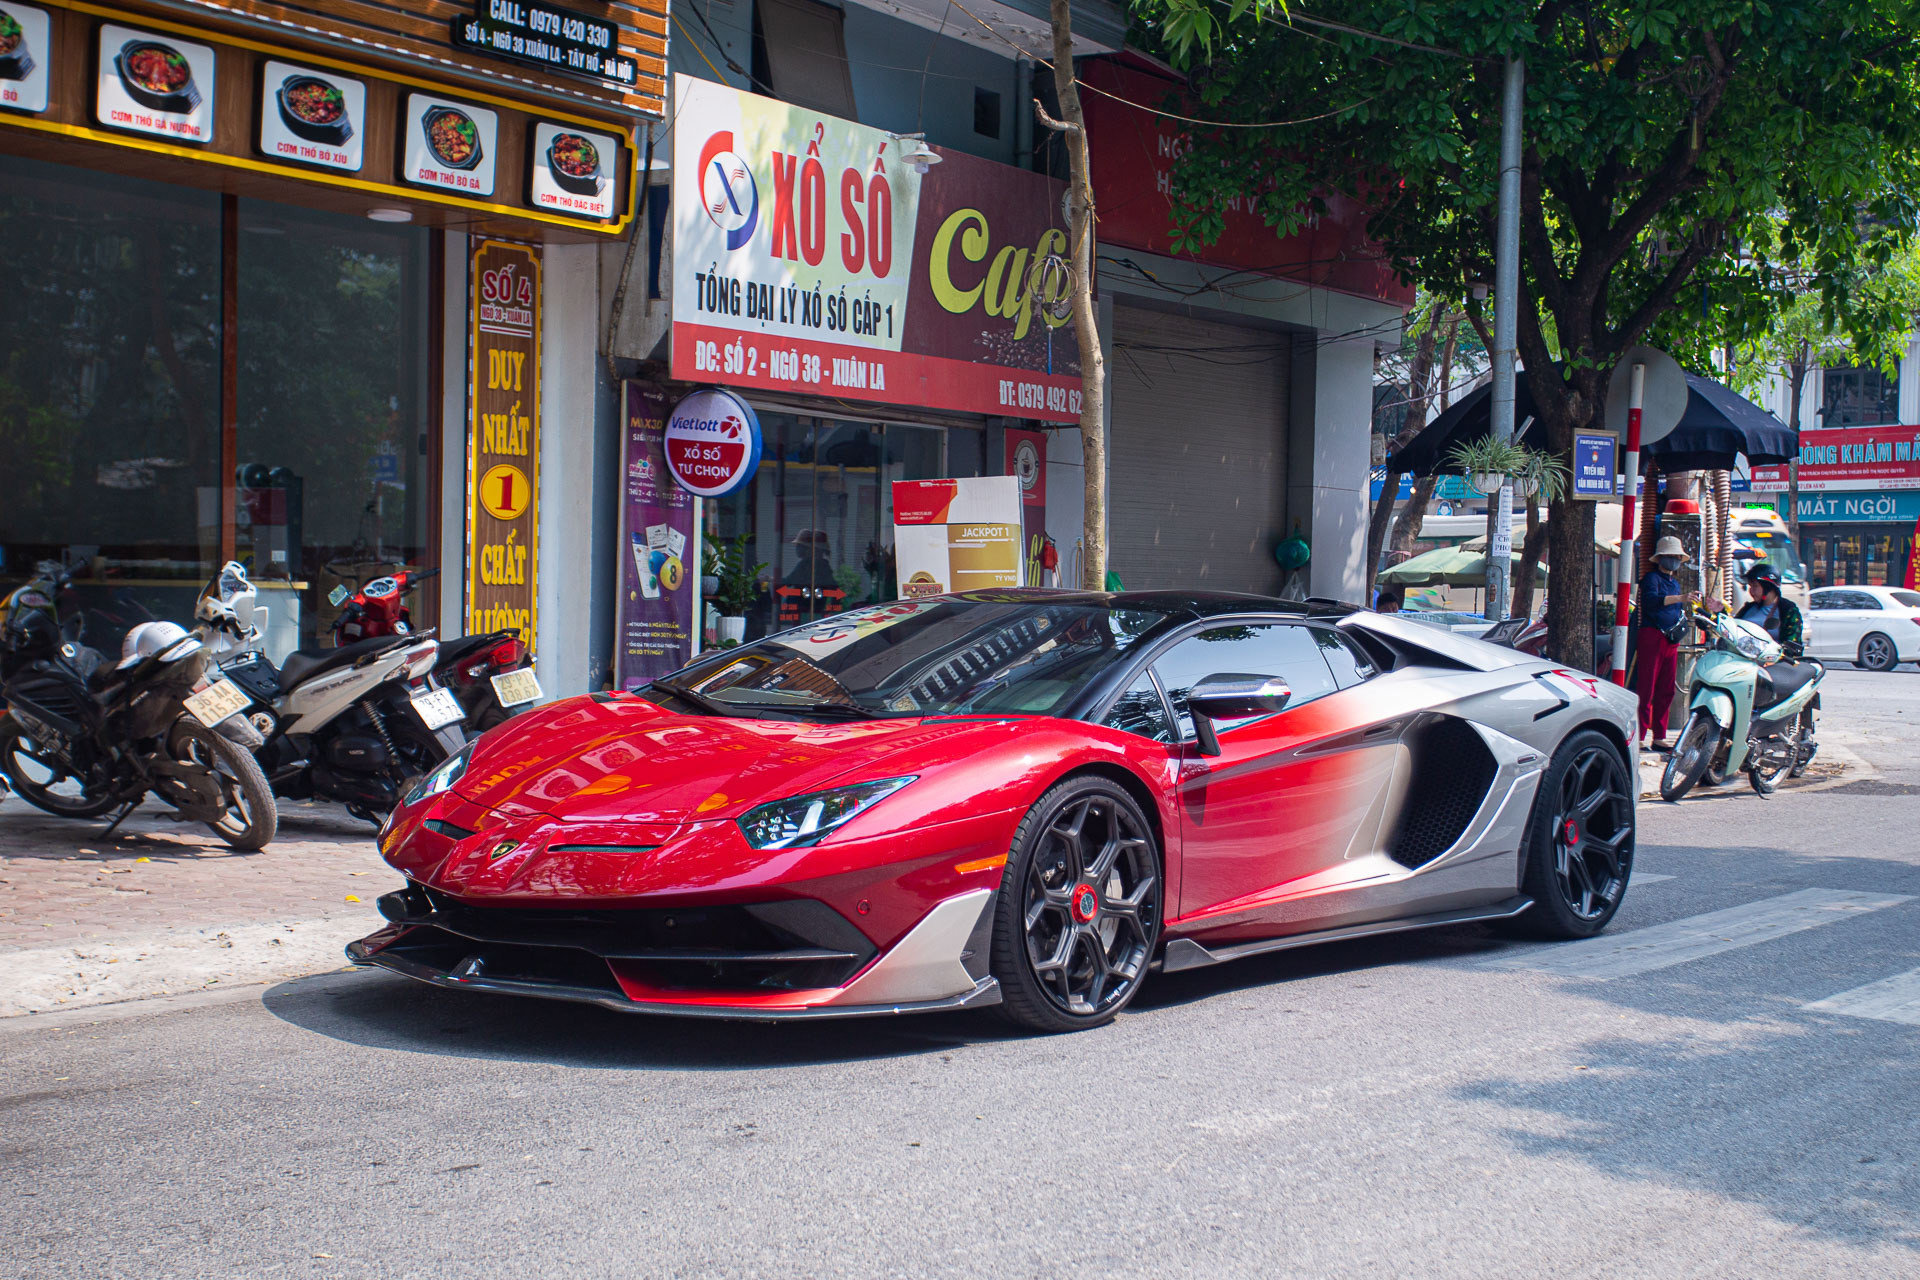 Siêu xe Lamborghini Aventador của đại gia Hà Nội trở thành độc bản sau khi độ